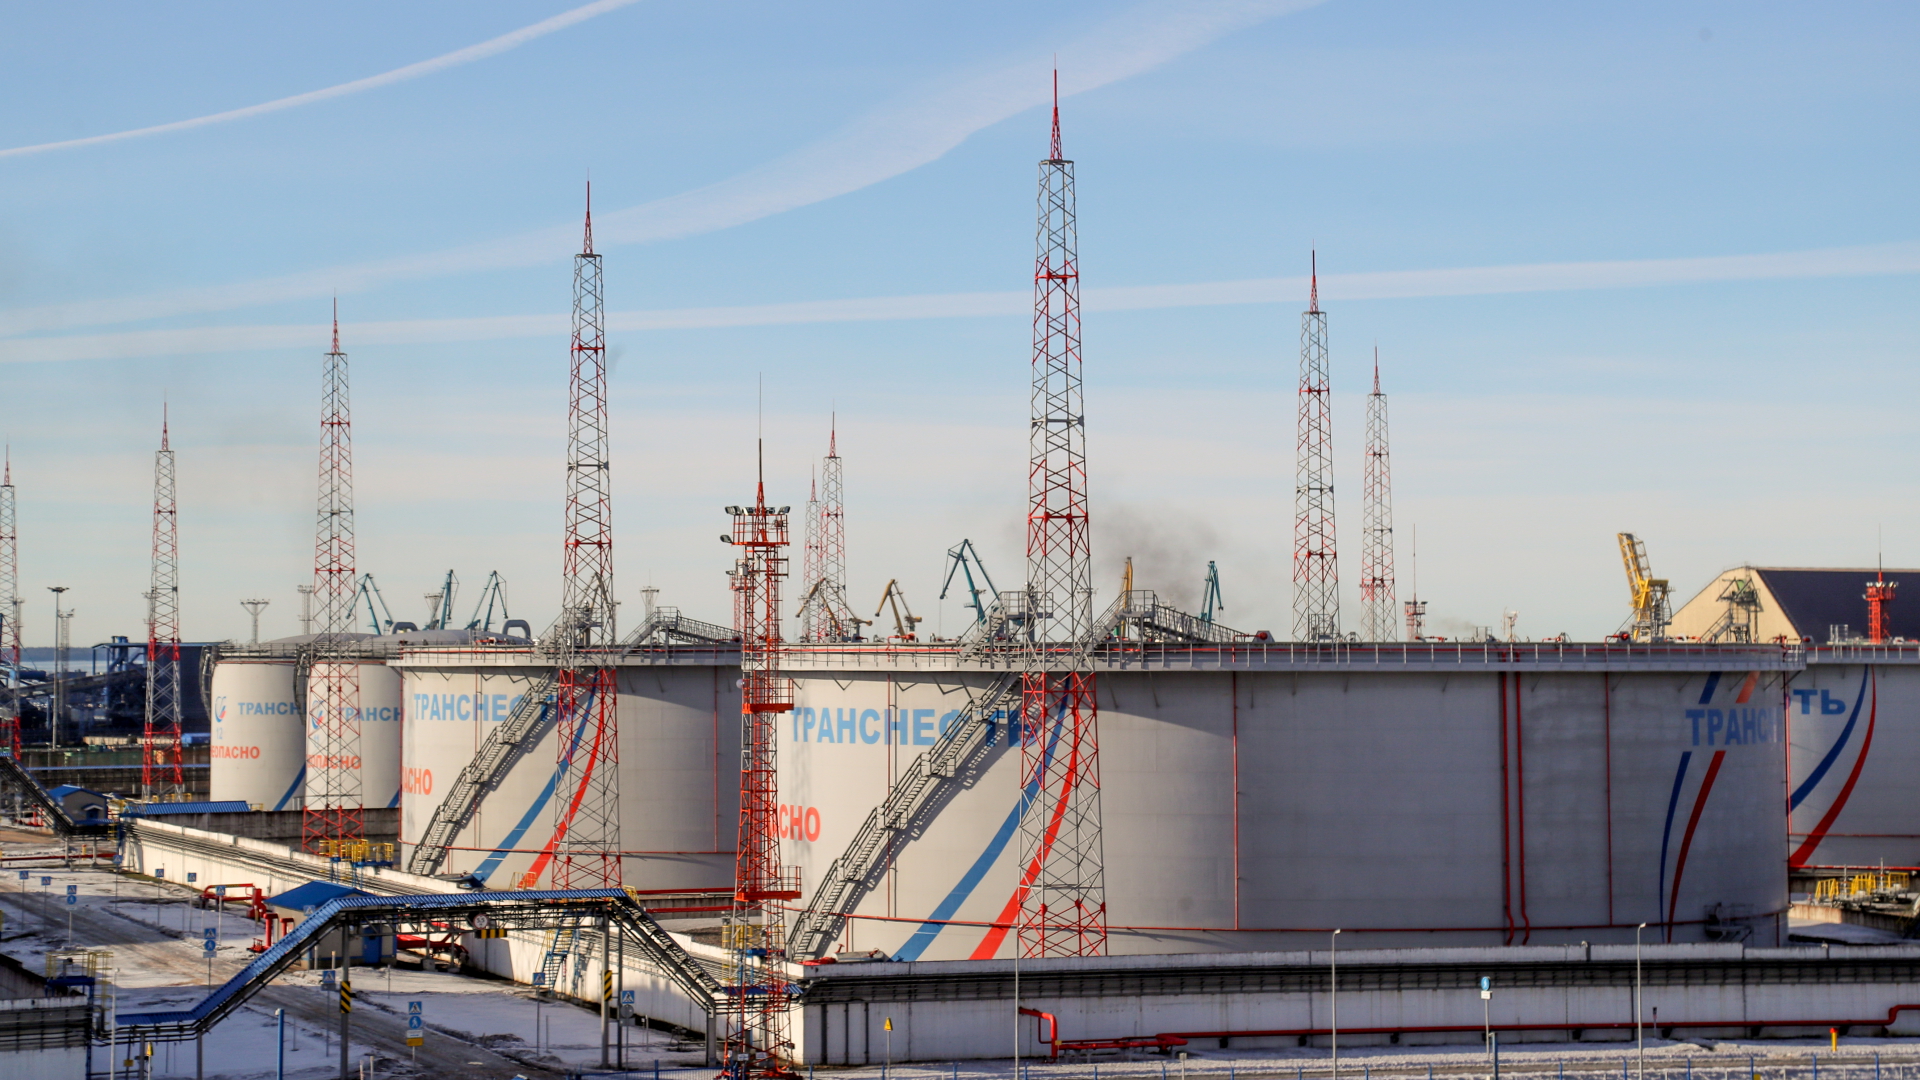 Tanks von Transneft, einem staatlichen russischen Unternehmen, das die Erdöl-Pipelines des Landes betreibt, im Ölterminal von Ust-Luga. | dpa